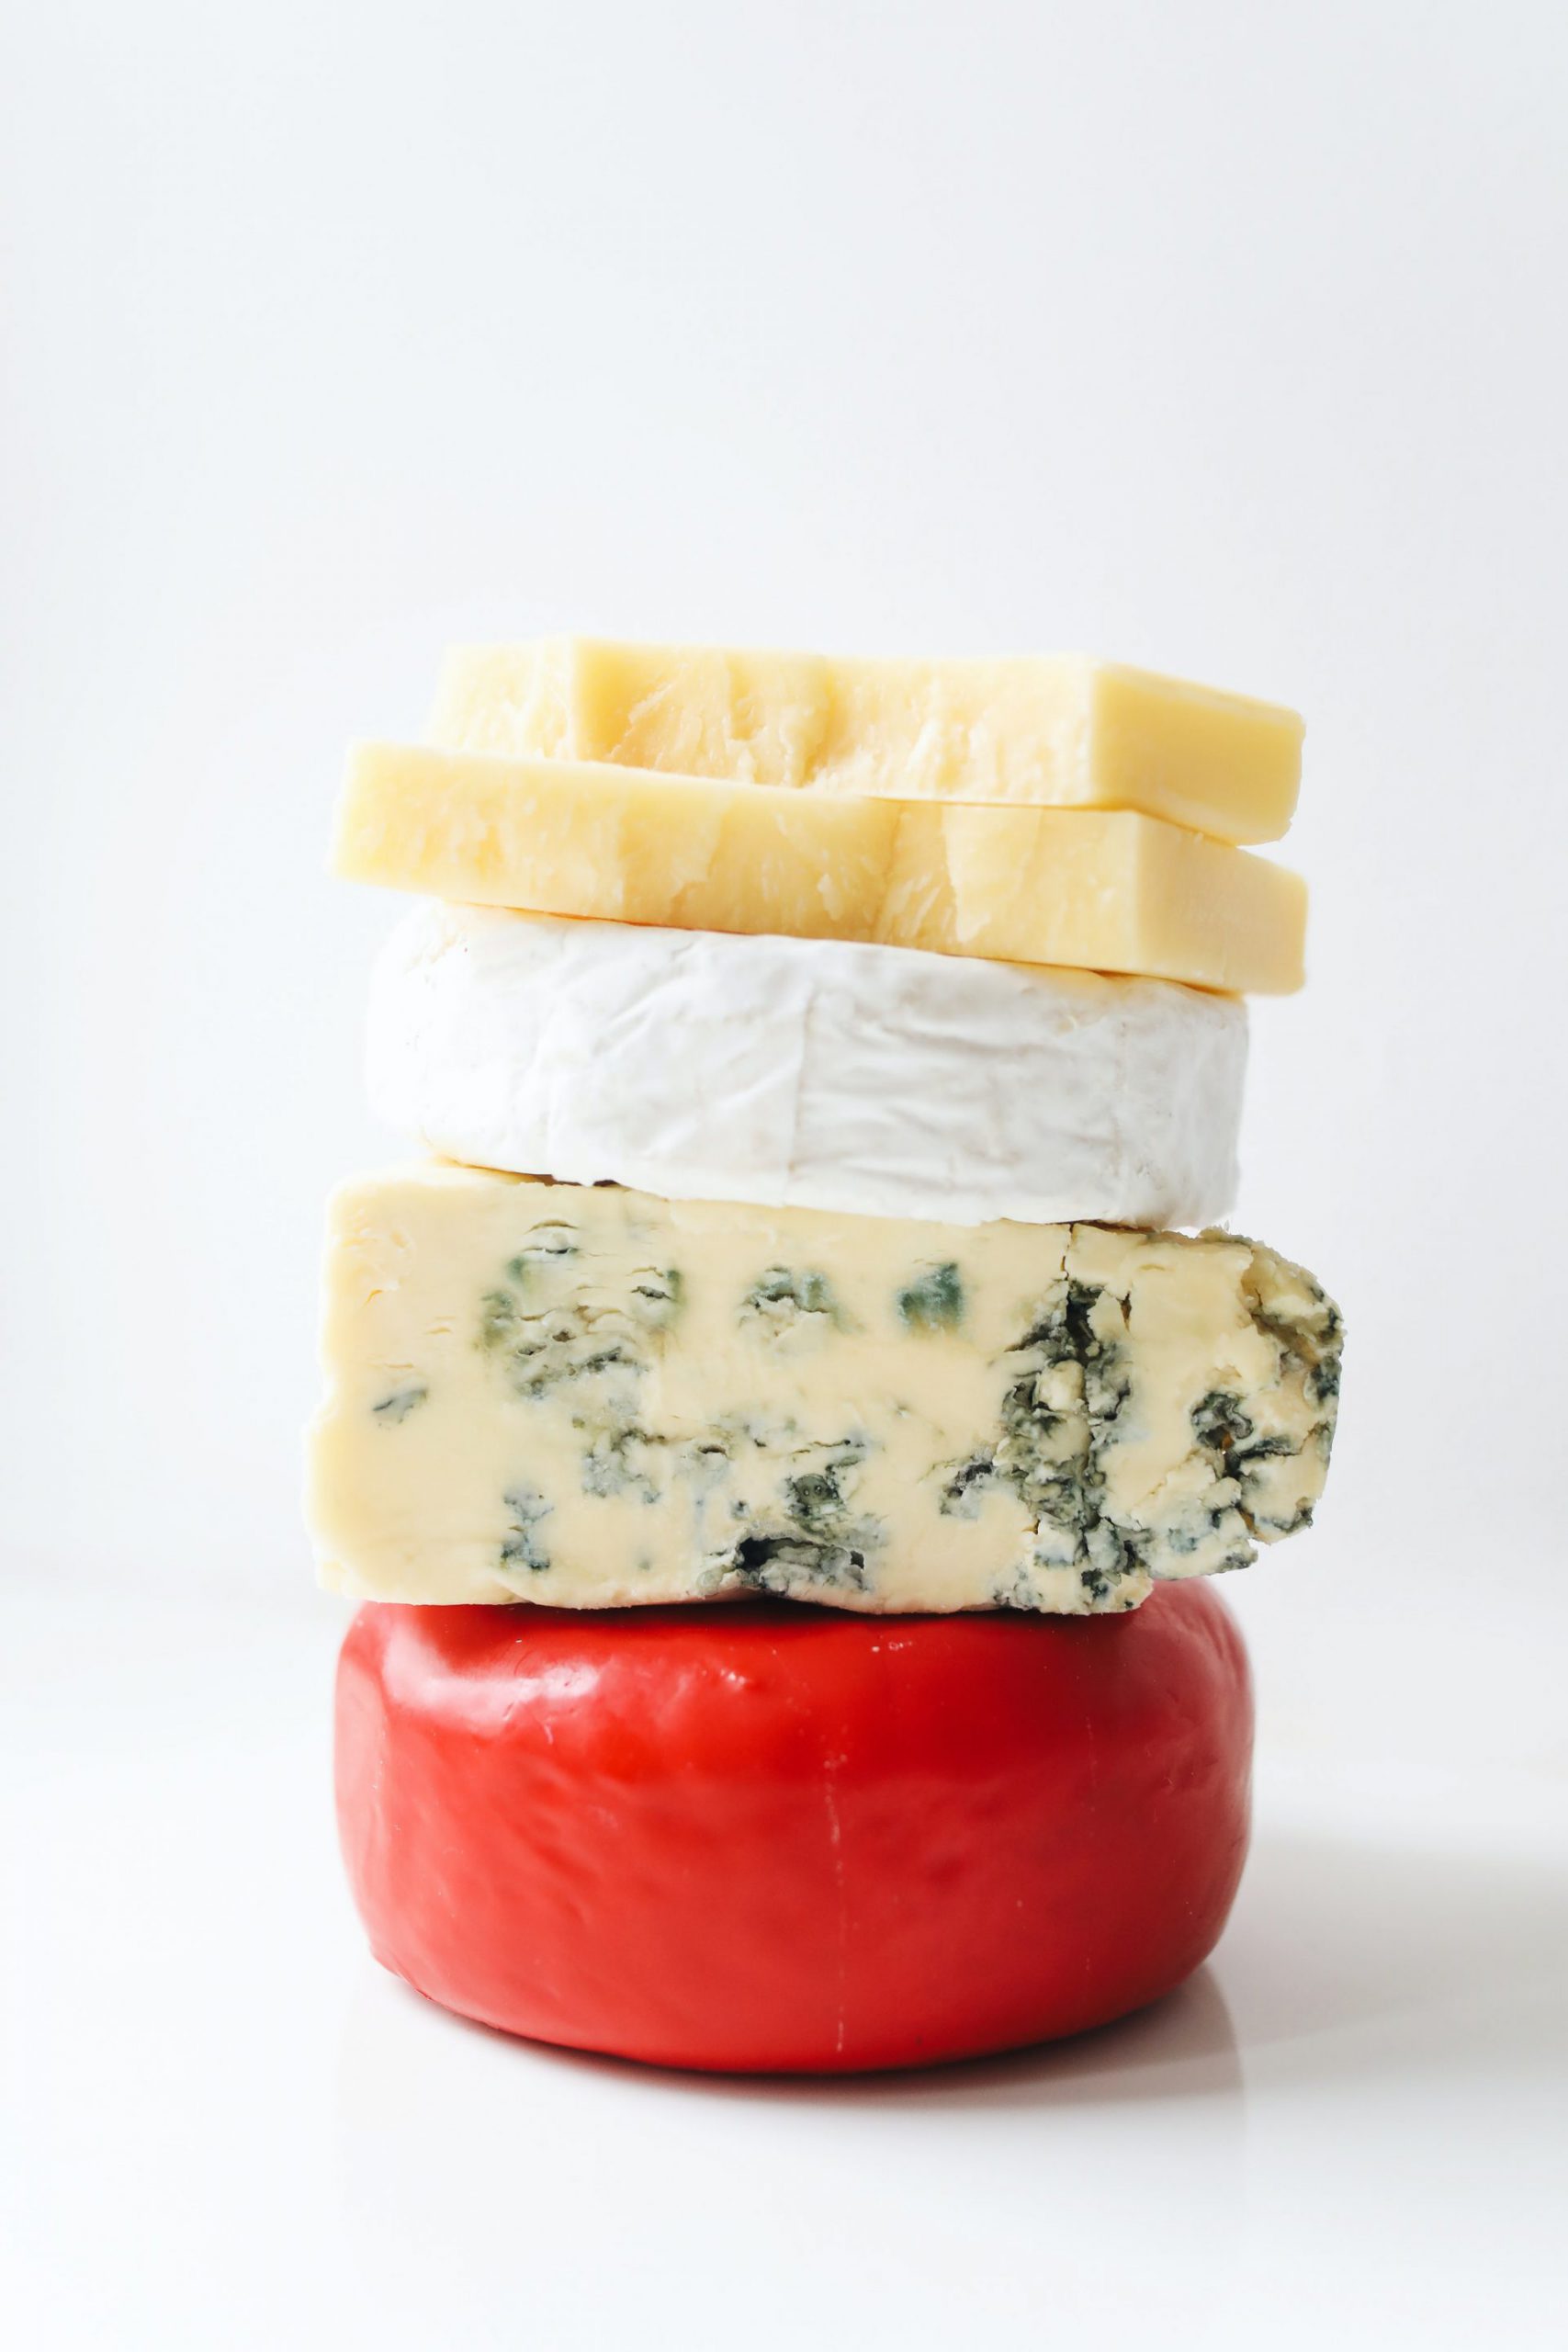 Les meilleurs fromages du monde. D'où viennent-ils?